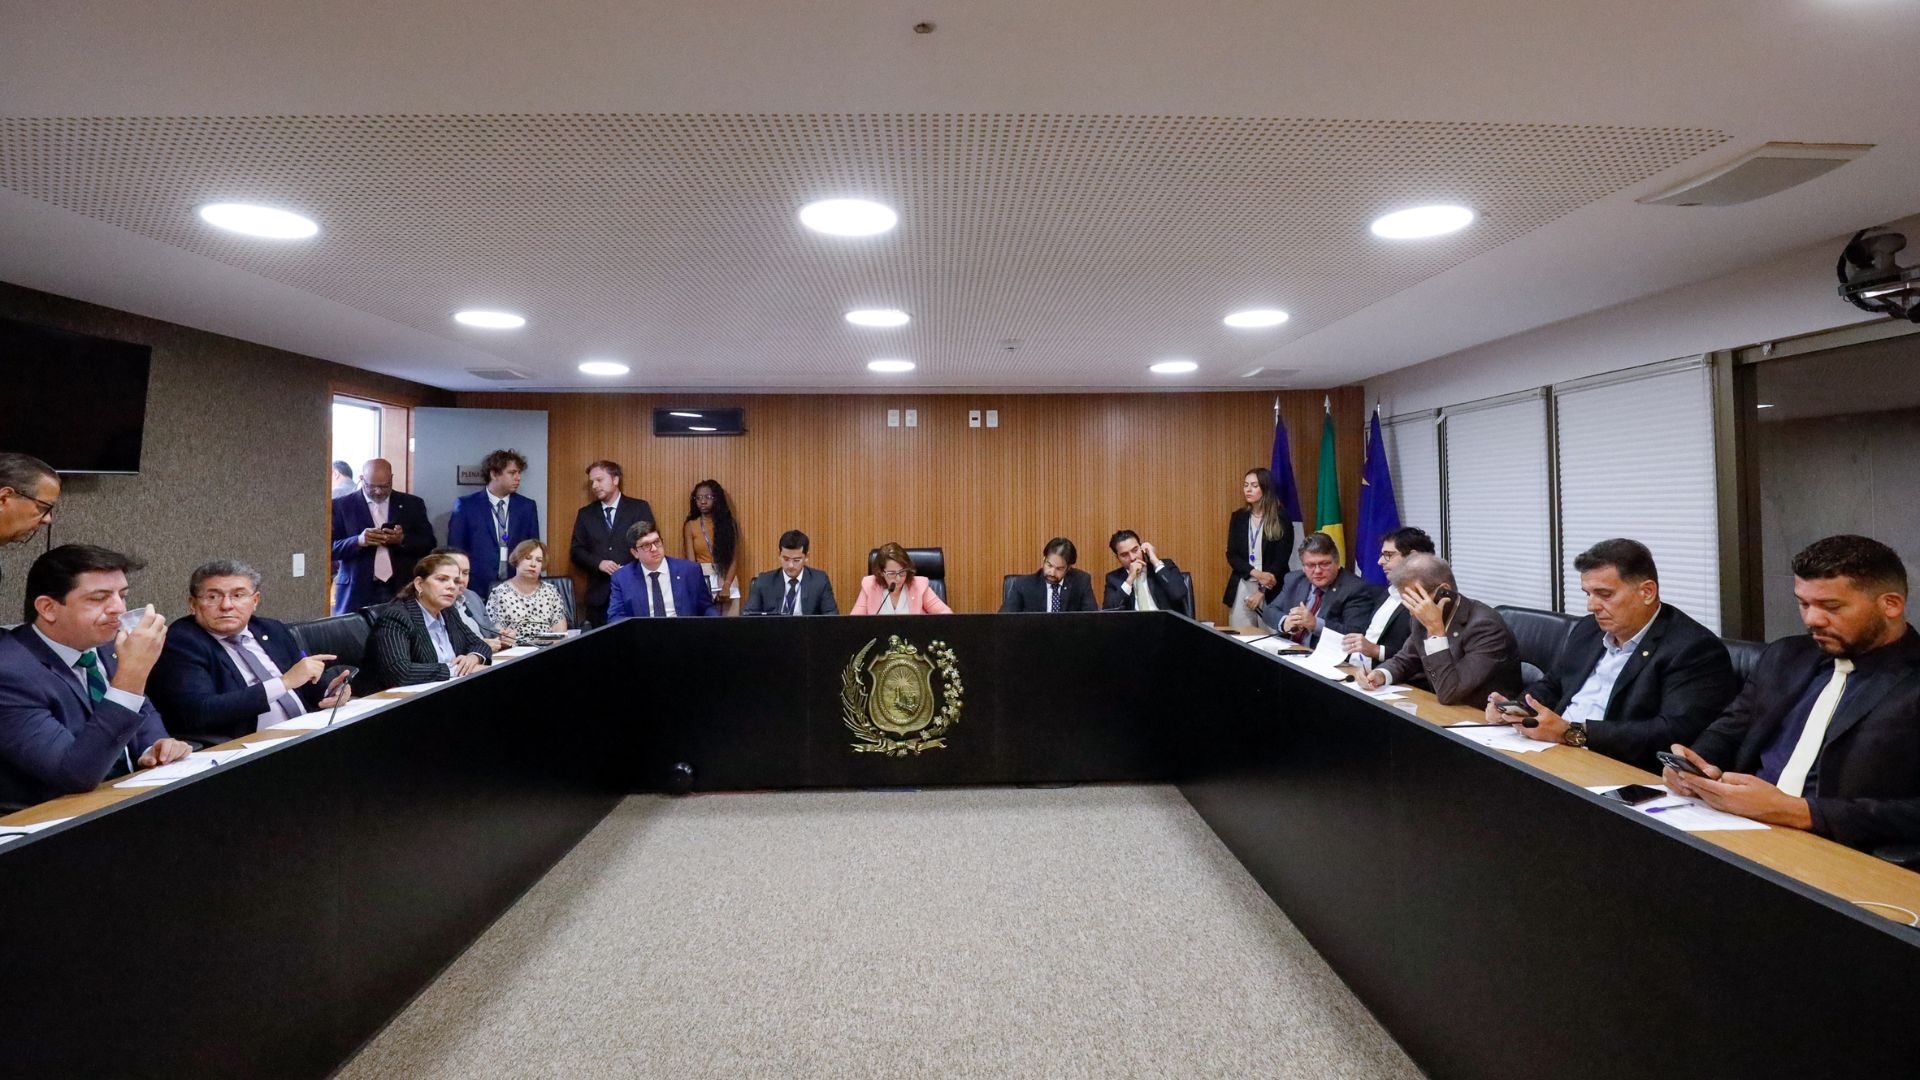 Governo consegue aprovação na Comissão de Finanças sobre fim das faixas salariais e projeto vai a plenário. Foto: Foto: Roberta Guimarães